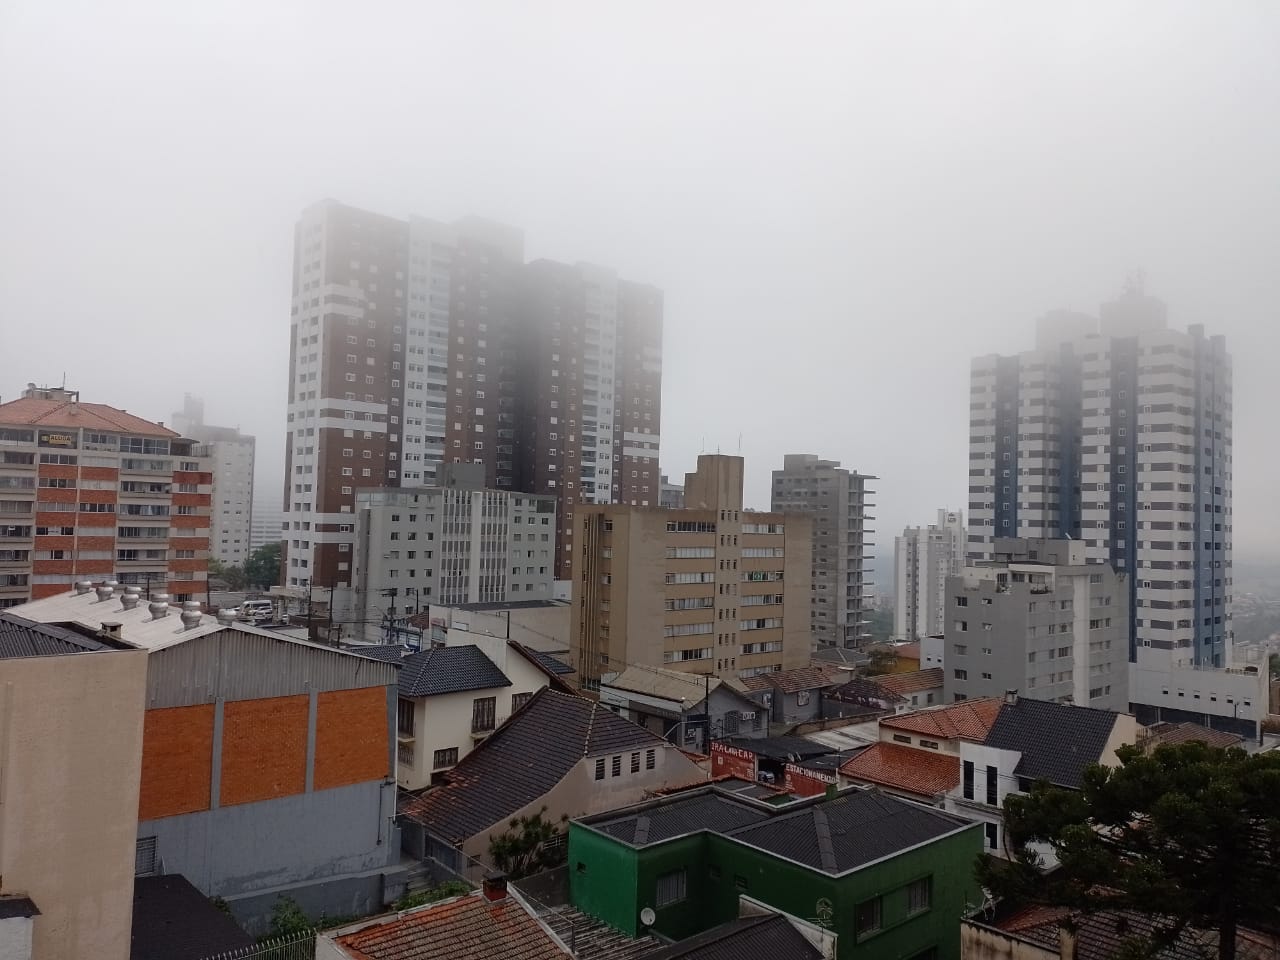 Em Ponta Grossa, a máxima prevista é de 18º C, enquanto a mínima será de 12º C